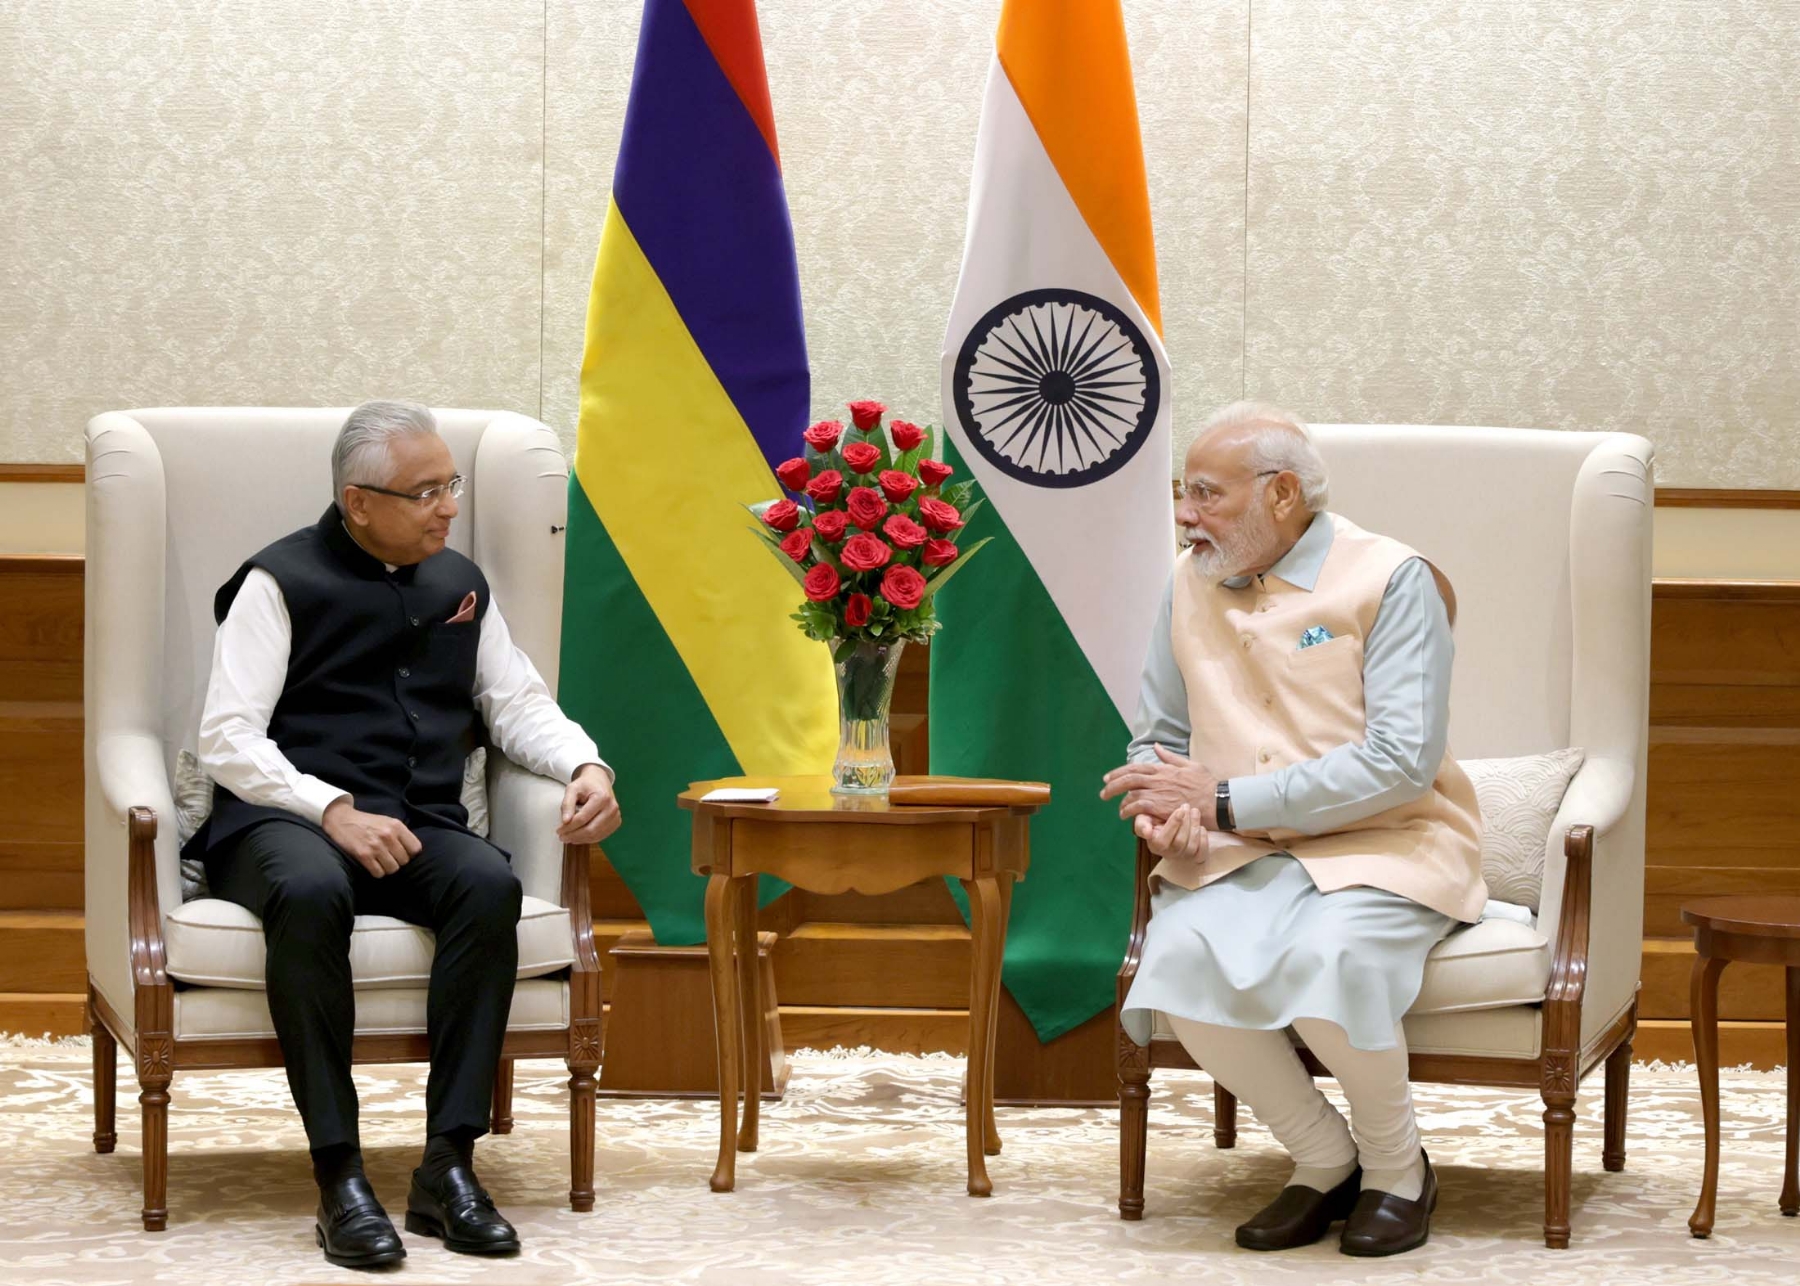 नई दिल्ली में शुक्रवार 08 सितंबर को प्रधान मंत्री नरेन्द्र मोदी और मॉरीशस के प्रधान मंत्री प्रविंद कुमार जुगनौथ के साथ द्विपक्षीय बैठक के दौरान। हिन्दुस्थान समाचार/फोटो गणेश बिष्ट